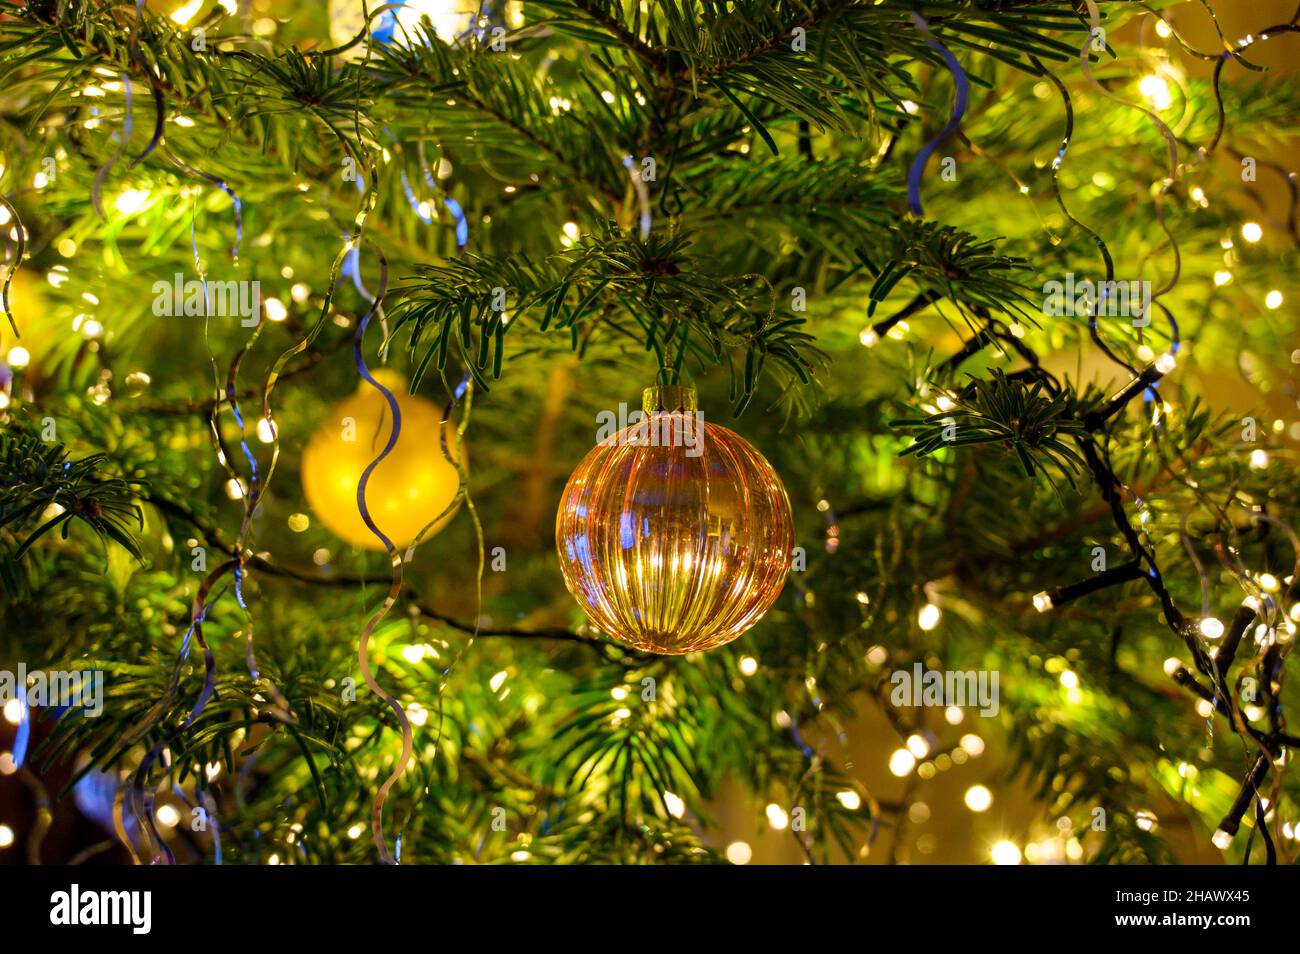 Décorations de Noël sur un sapin, boules et guirlandes lumineuse. Adornos navideños en un árbol, bolas y luces. Foto de stock